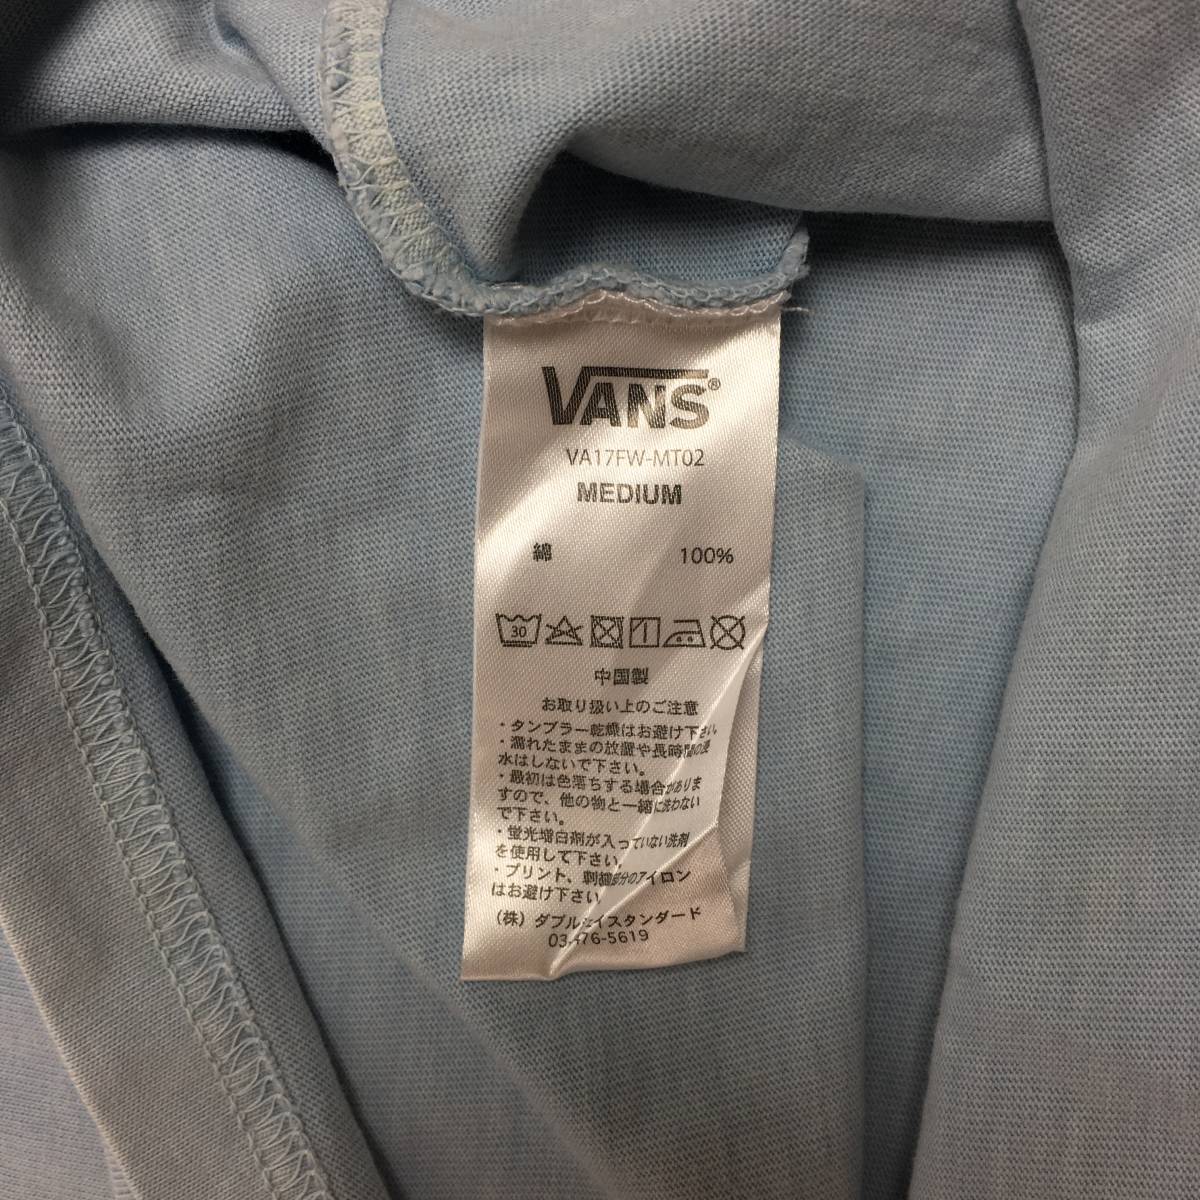 【新品】VANS ヴァンズ ロングTシャツ VA17FW-MT02 グラフィック Mサイズ 水色 袖プリント 長袖 スケボー スケーター sk8_画像9